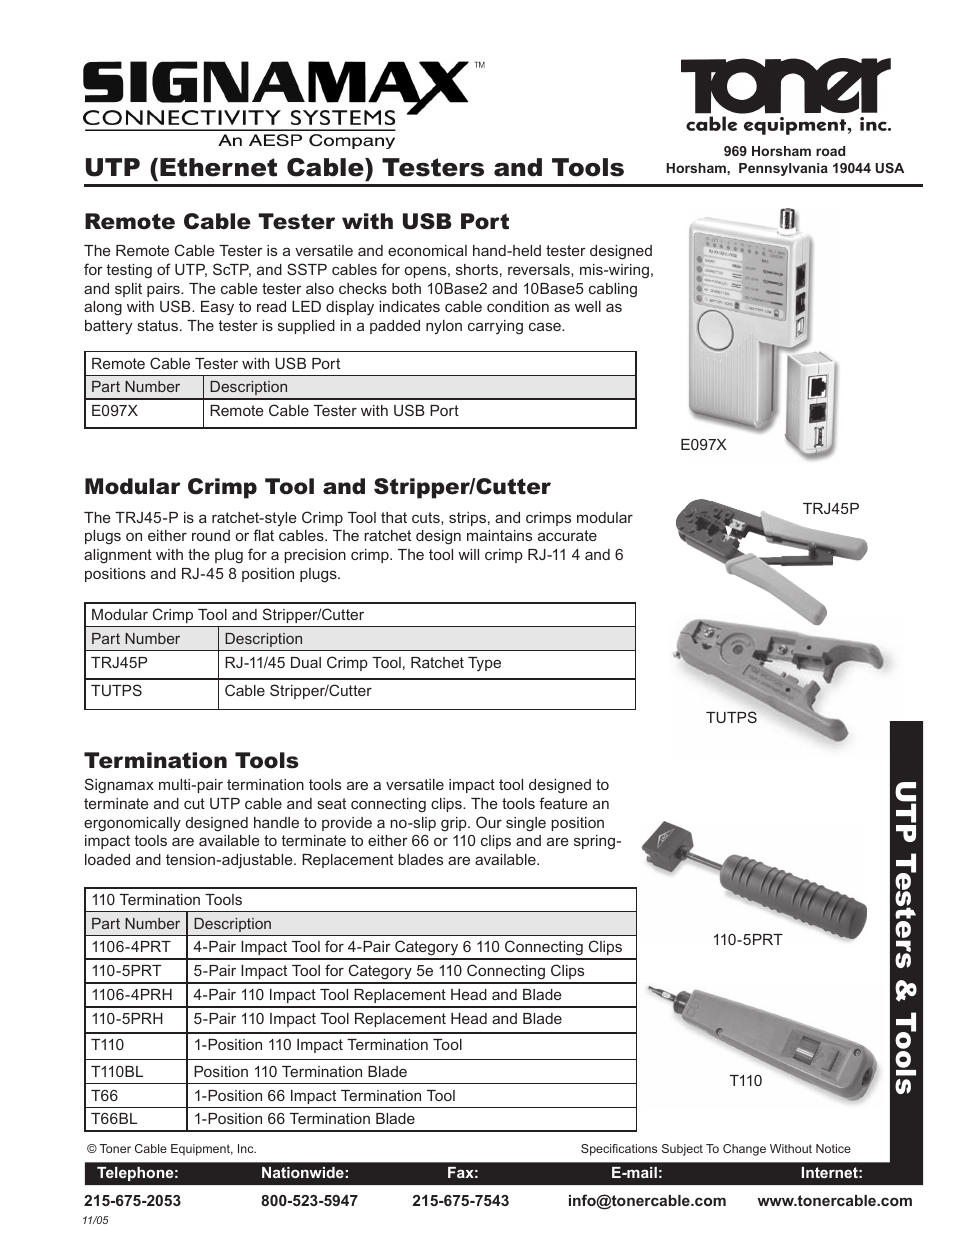 TRJ45P _ TUTPS Modulart Crimp Tool and Stripper-Cutter